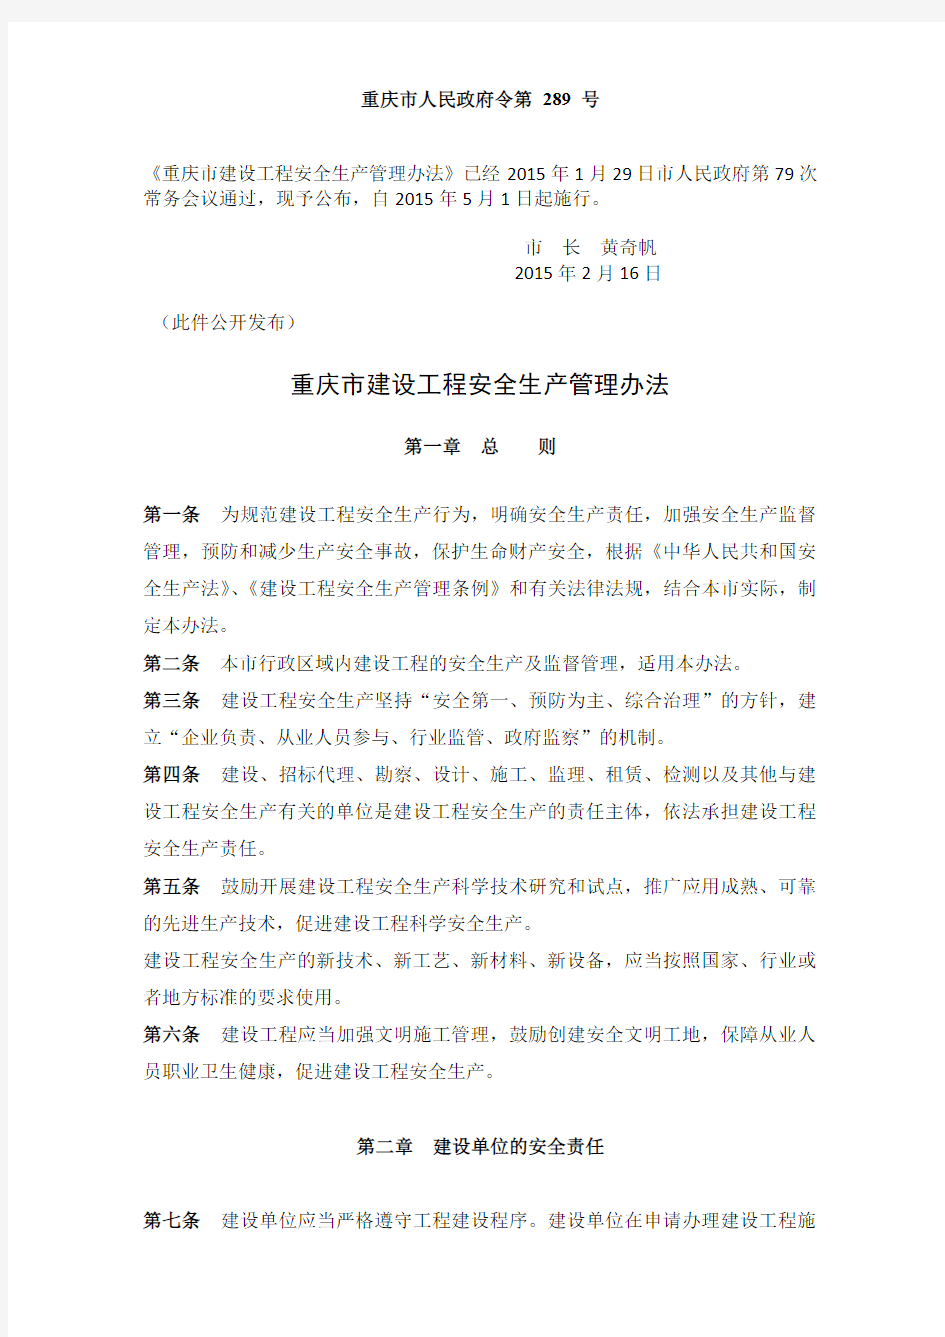 重庆市建设工程安全生产管理办法渝府令 〔2015〕 289号